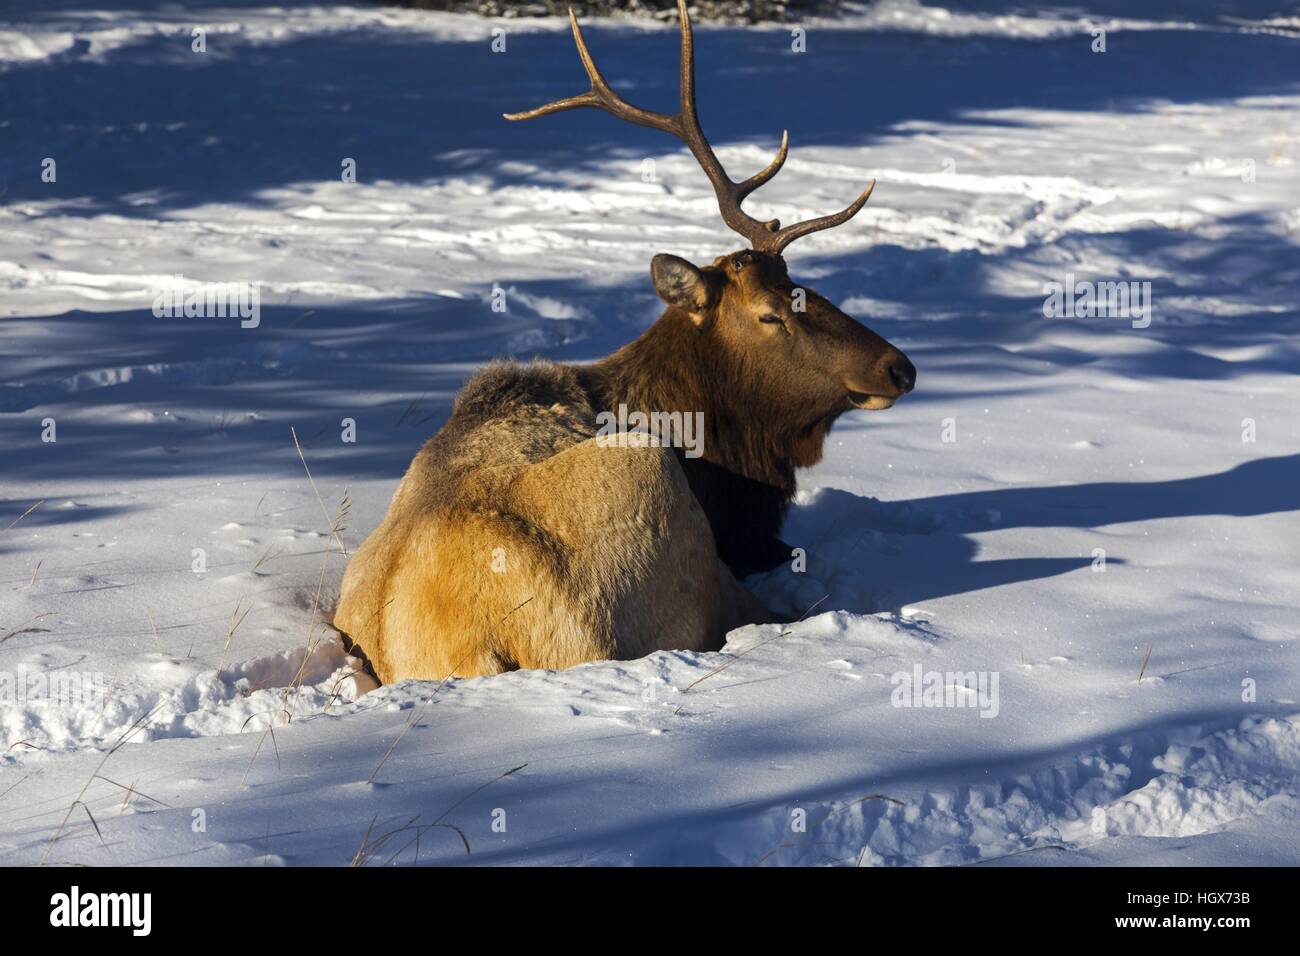 Le cerf blessé avec un Antler perdu en ornière d'automne assis dans la neige lors d'une journée d'hiver ensoleillée dans le parc national Banff des montagnes Rocheuses canadiennes Banque D'Images